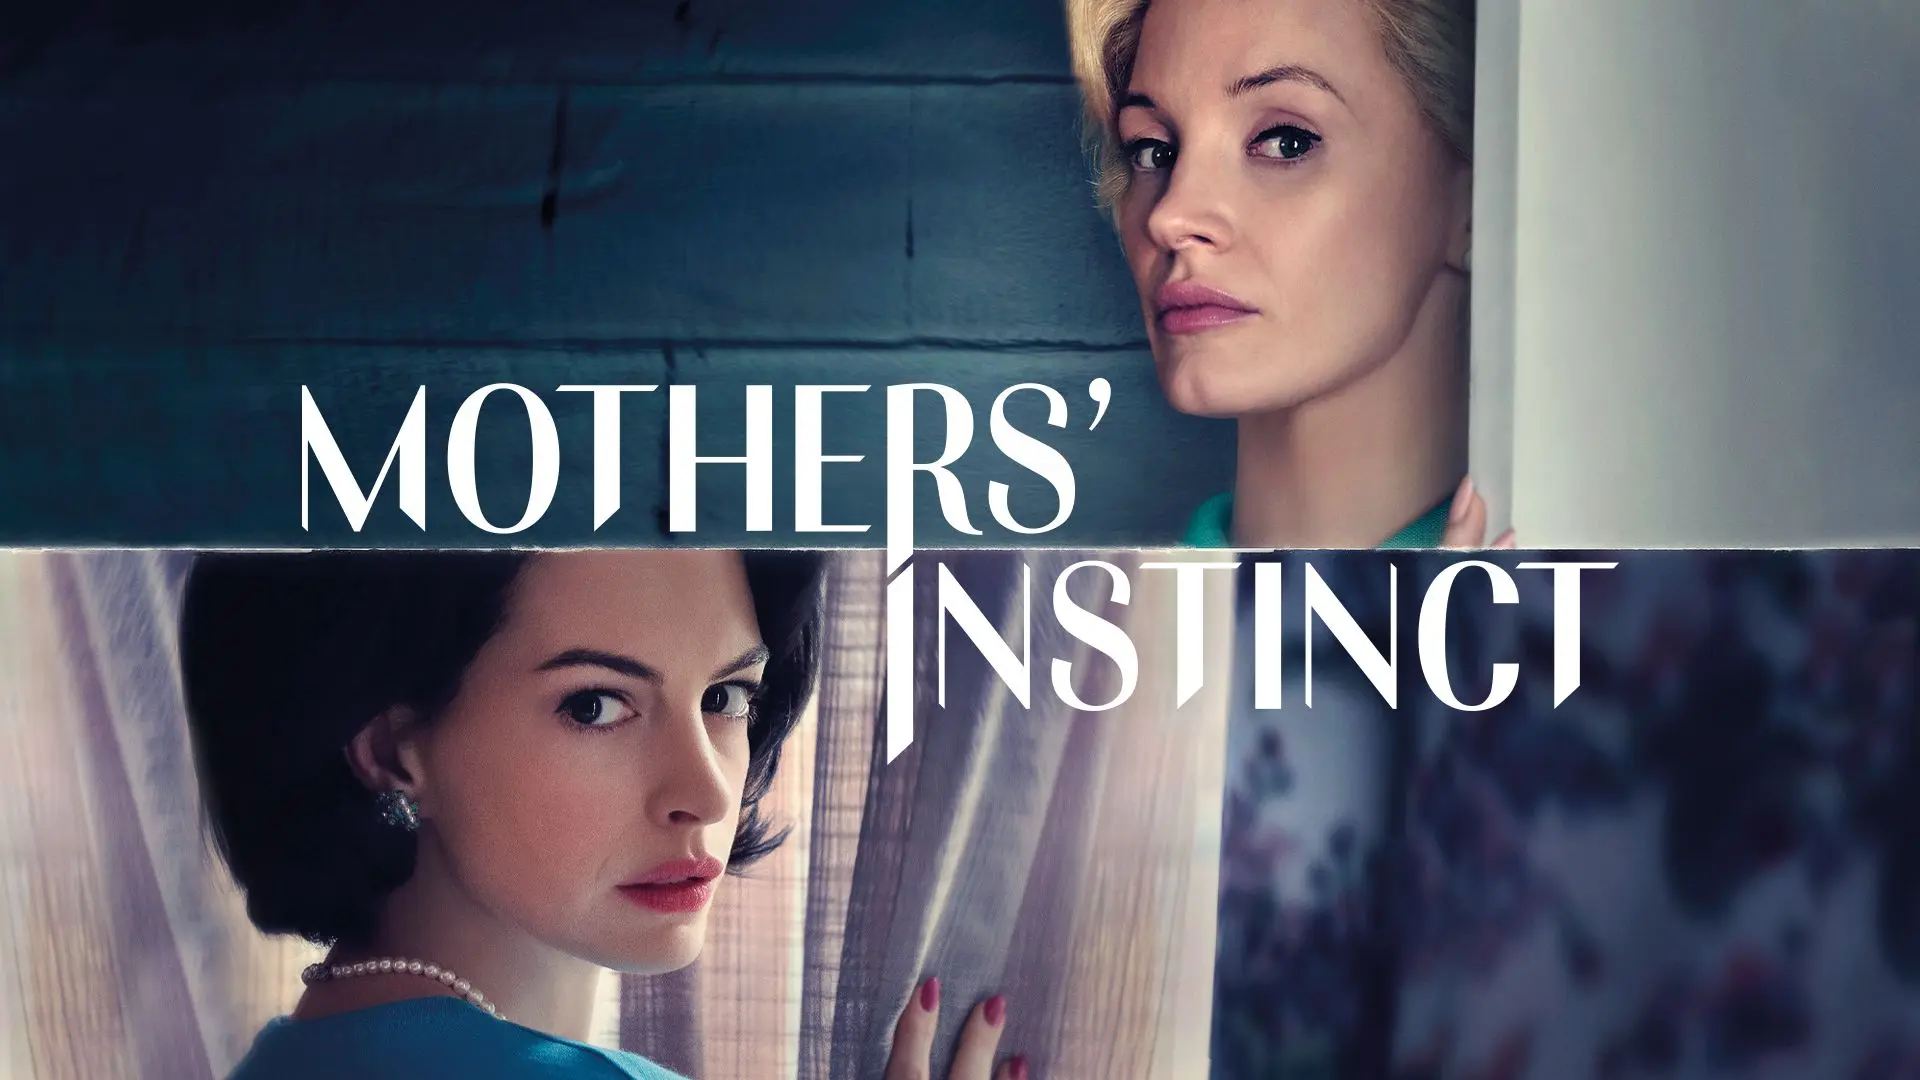 نقد فیلم غریزه مادران (Mothers' Instinct) | تبدیل دوستی دو مادر به یک دشمنی